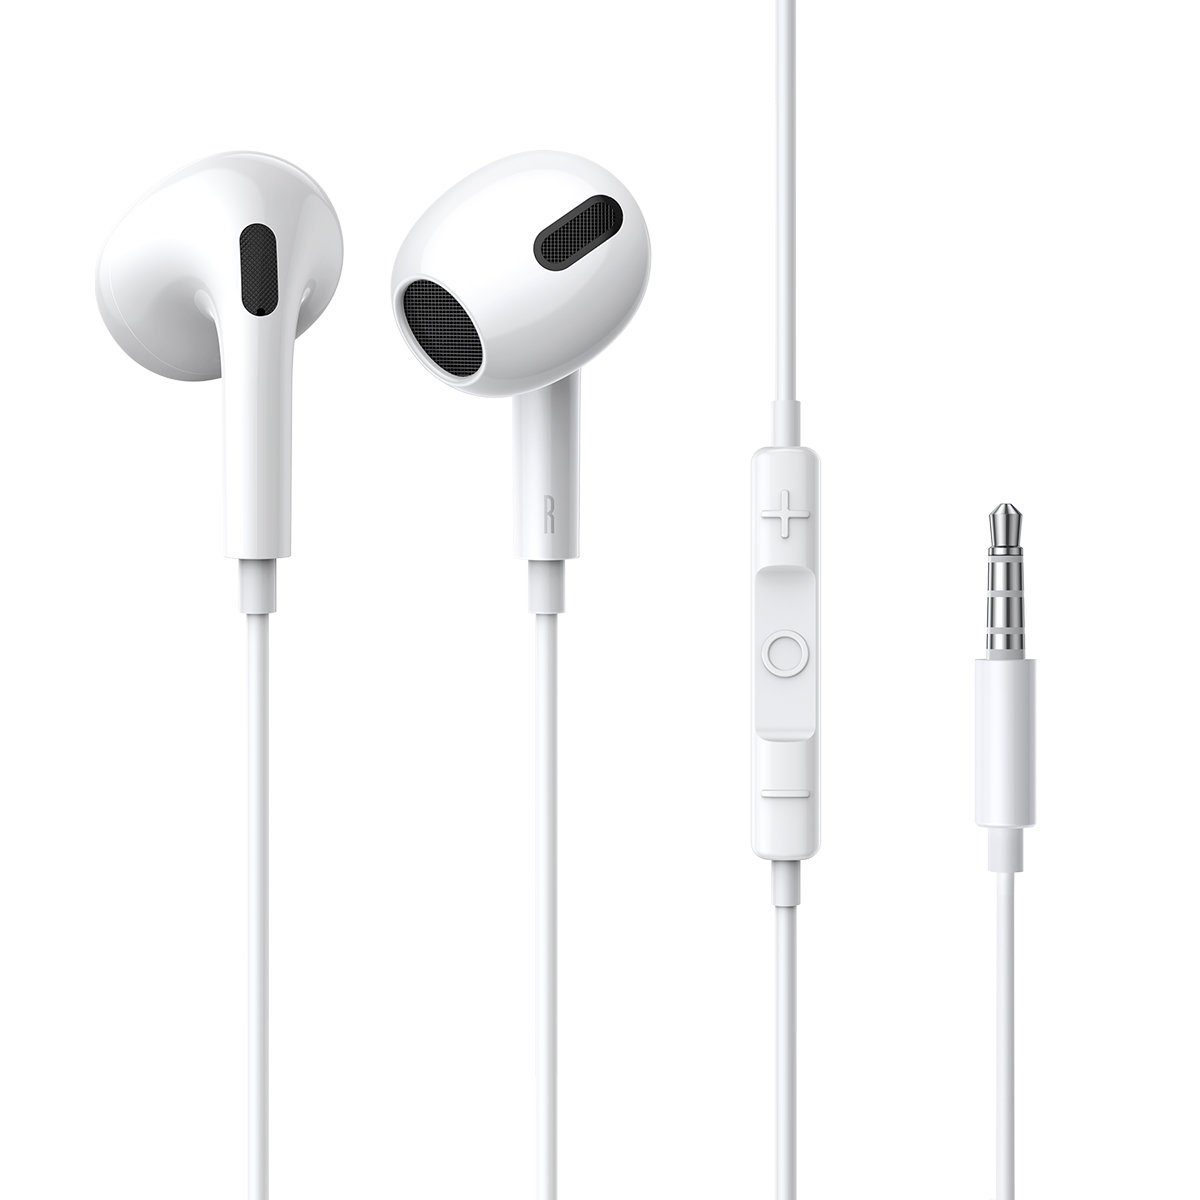 Wasser- H17 Kopfhörer, Kabellänge: weiß Ohr perfekt Encok 3,5-mm-Kopfhörer (kabelgebungen, passen, Kabel, mit kabelgebunden, On-Ear-Kopfhörer m) 1,1 und schweißbeständig, die Miniklinke, Baseus ins